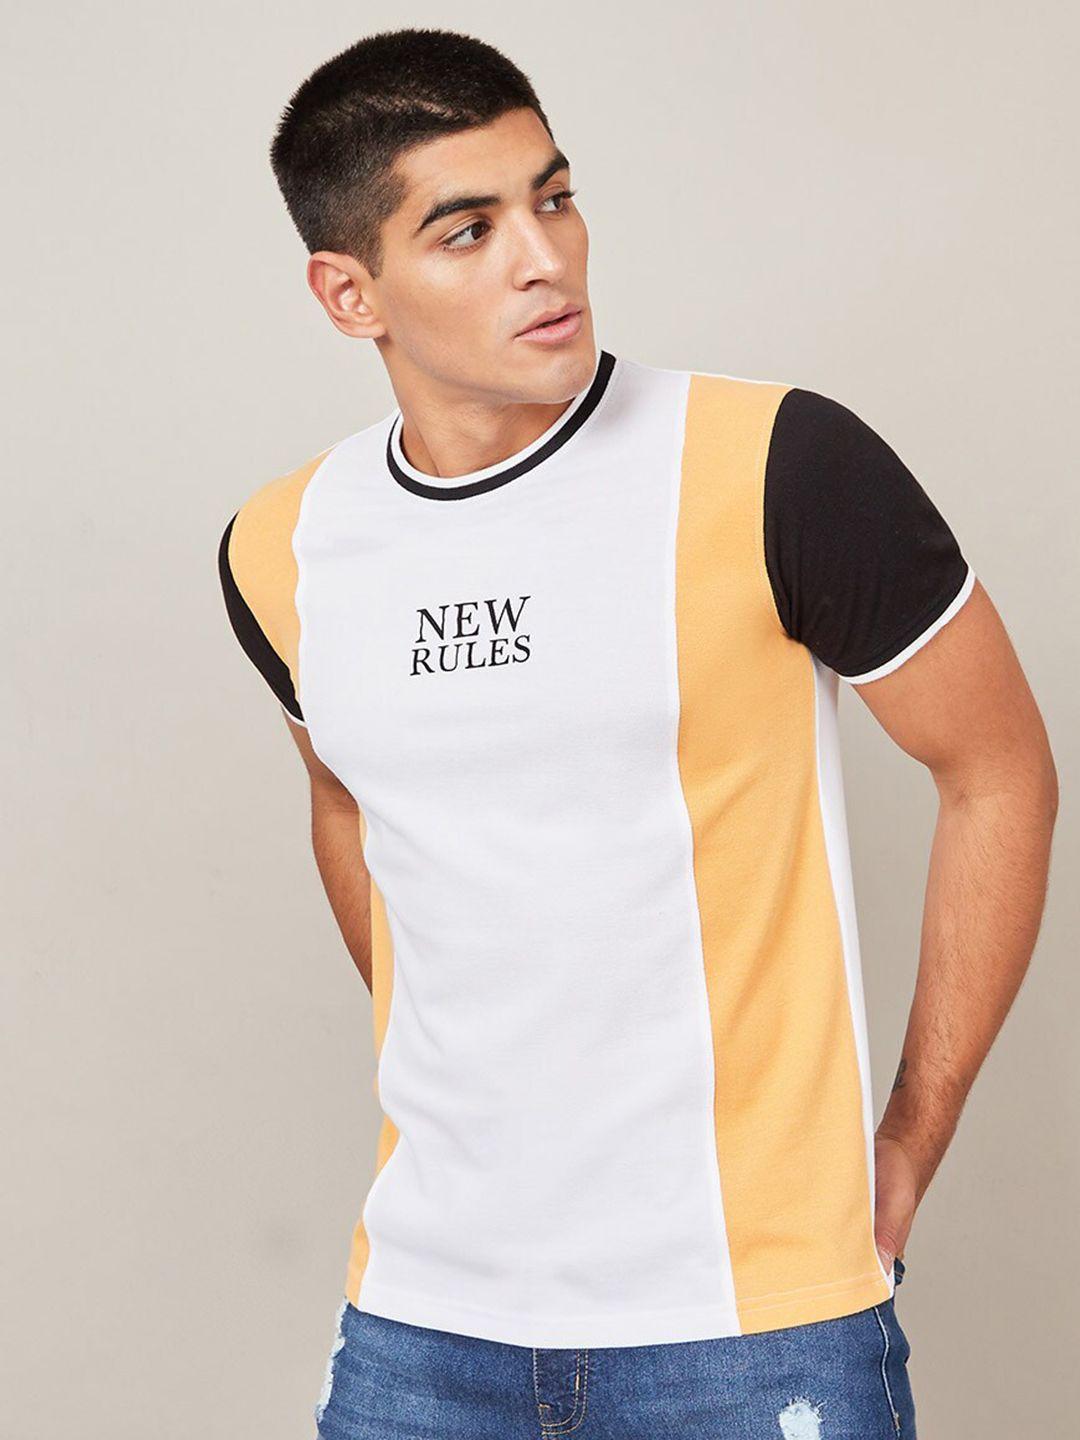 styli white & yellow colourblocked round neck cotton t-shirt